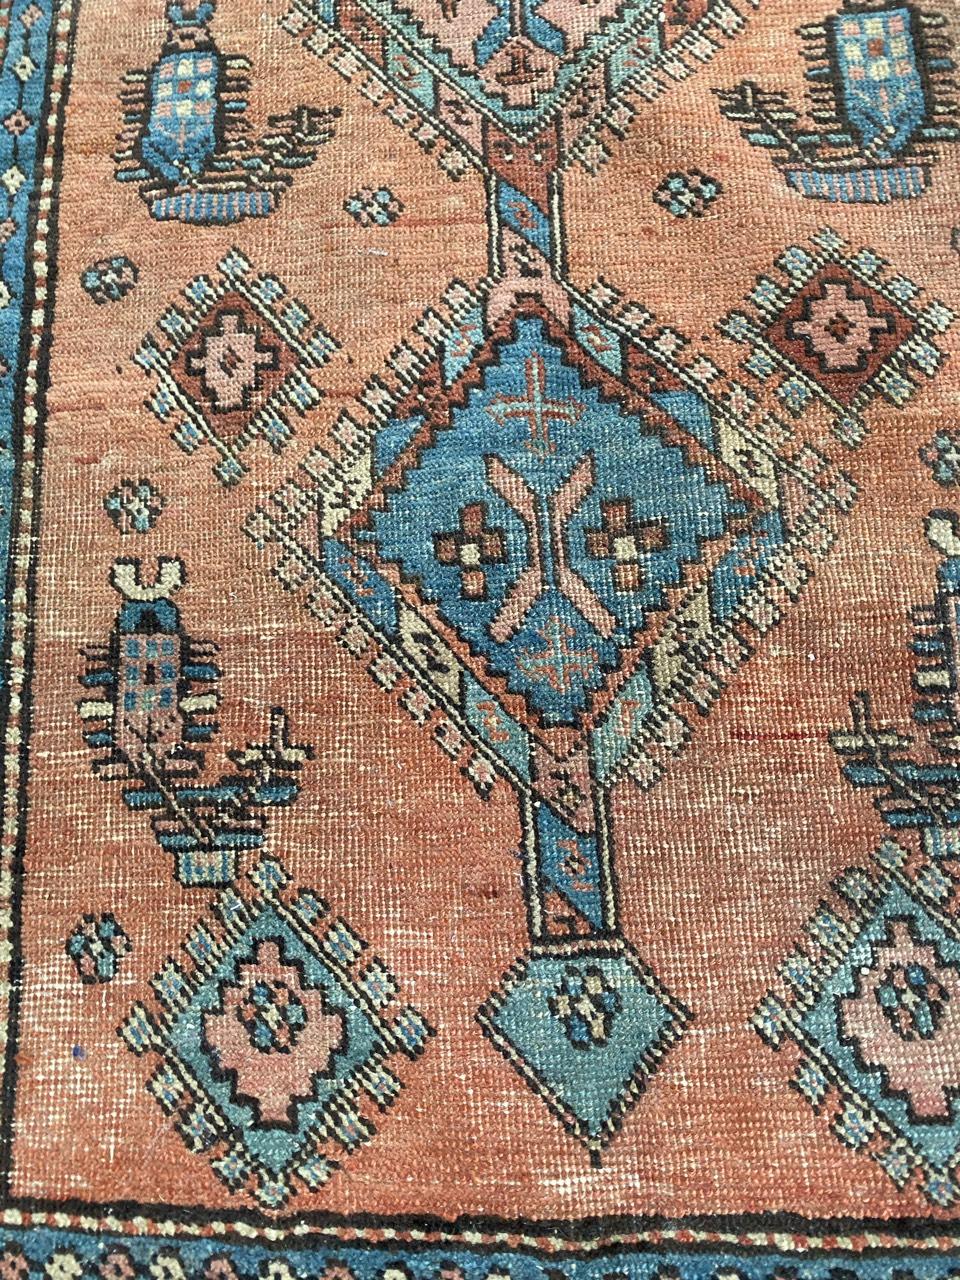 Sehr schöner Teppich aus dem späten 19. Jahrhundert mit schönem Tribal-Muster und schönen natürlichen Farben mit Orange, Blau, Rosa und Grün, komplett handgeknüpft mit Wollsamt auf Baumwollbasis.

✨✨✨
